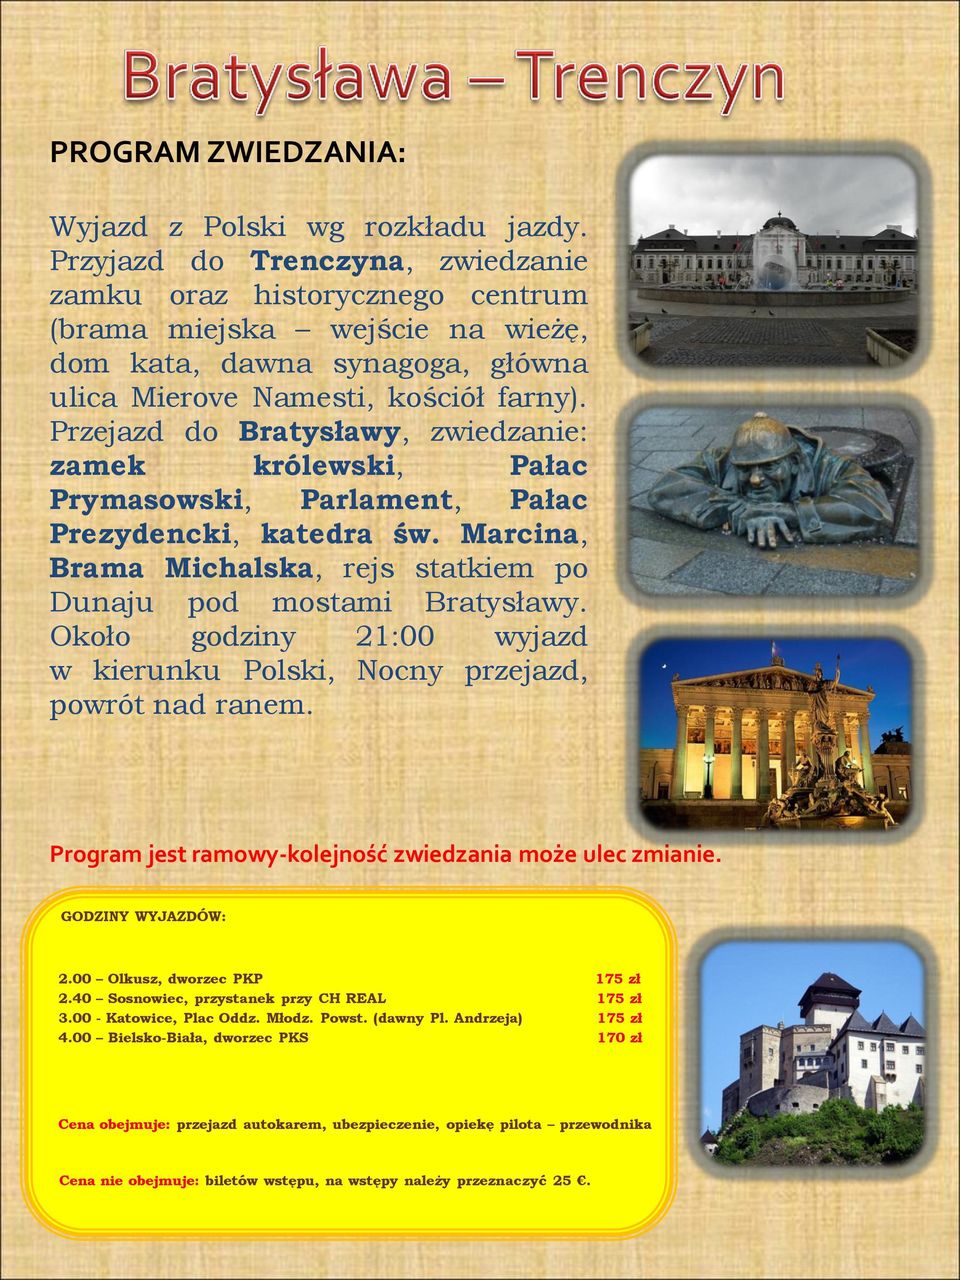 Przejazd do Bratysławy, zwiedzanie: zamek królewski, Pałac Prymasowski, Parlament, Pałac Prezydencki, katedra św.